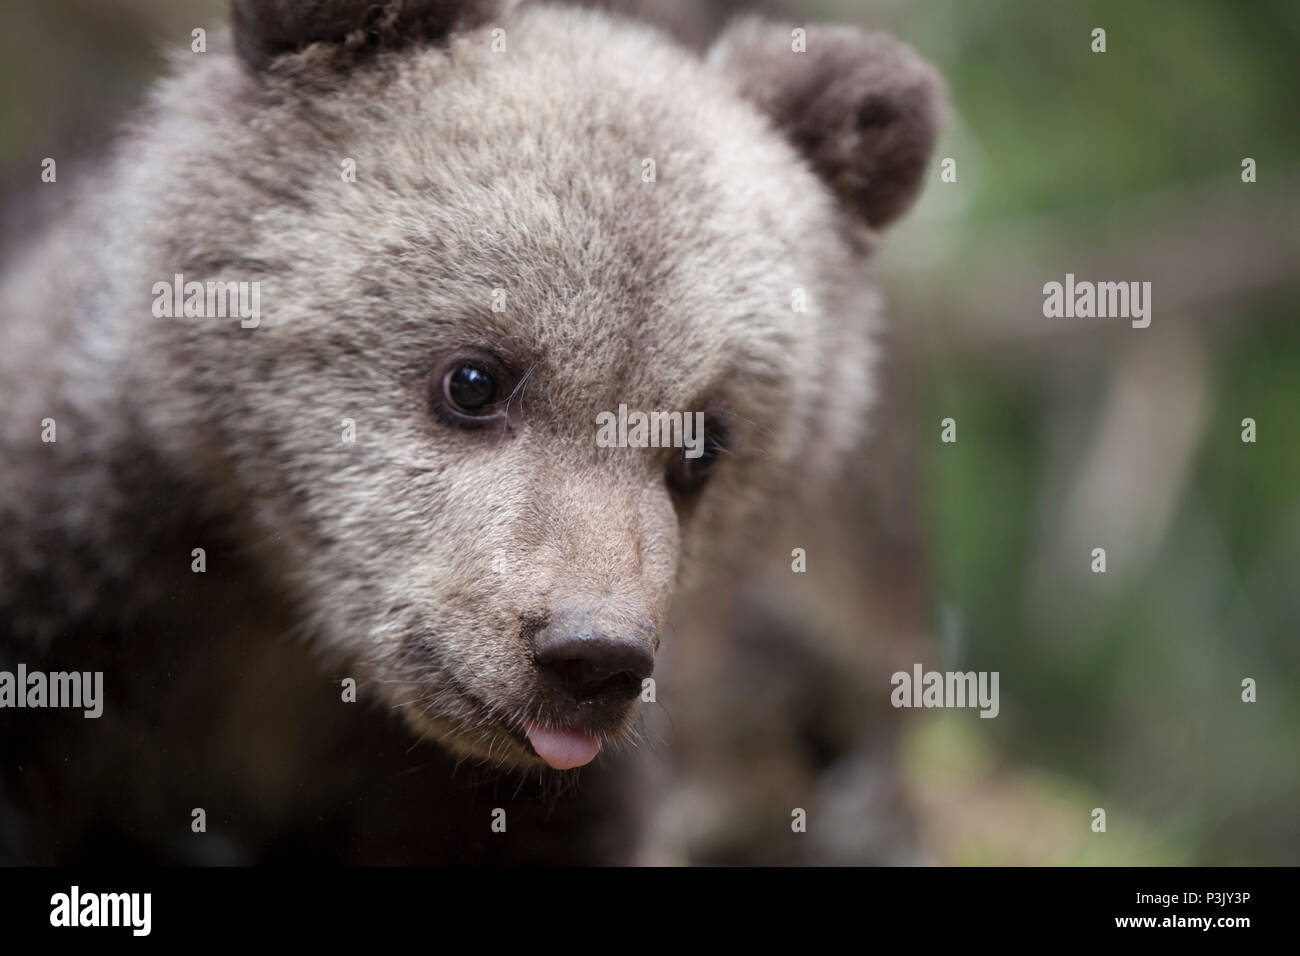 Adorable Baby Bear Cub Holding die Zunge raus aus der Nähe suchen awaywith grüner Hintergrund Stockfoto